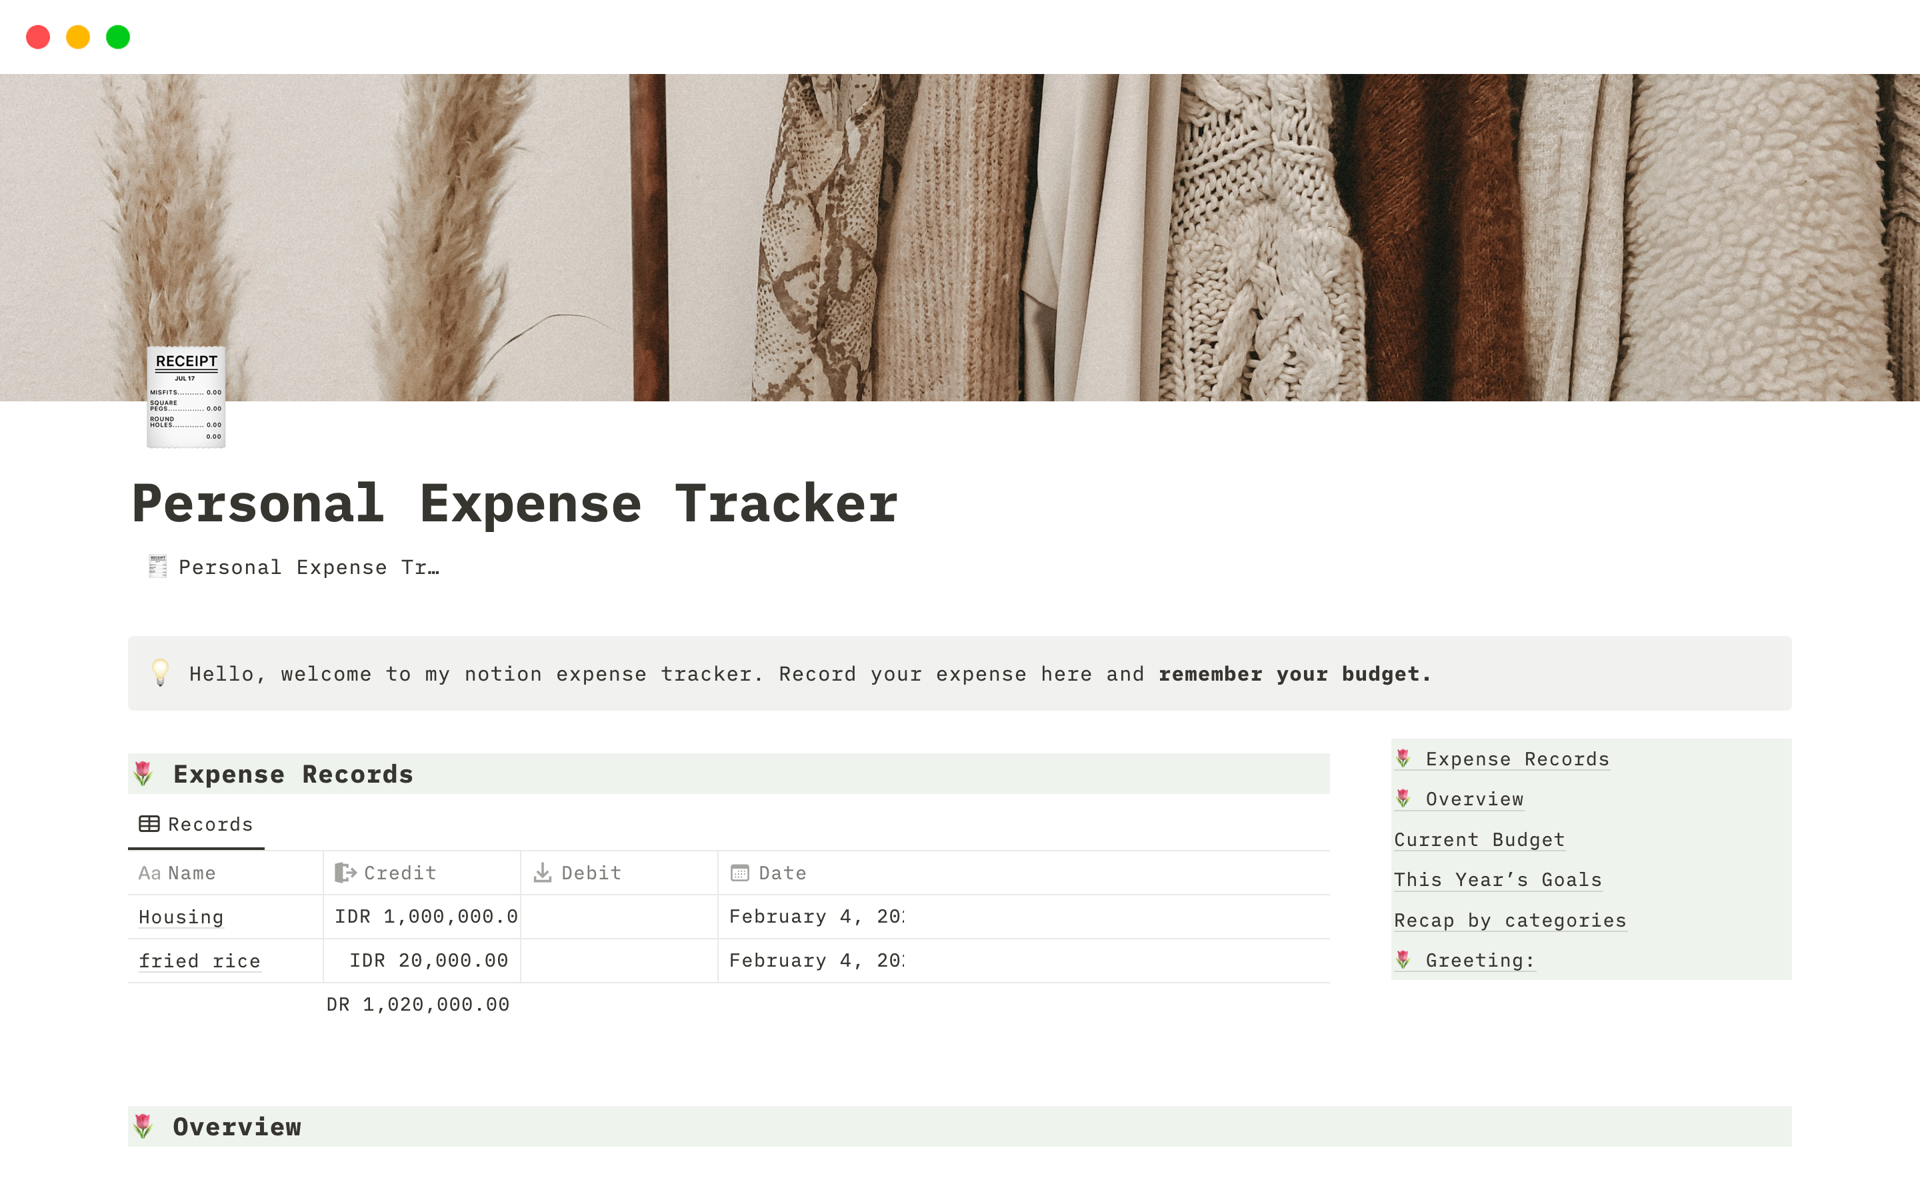 Aperçu du modèle de Personal Expense Tracker